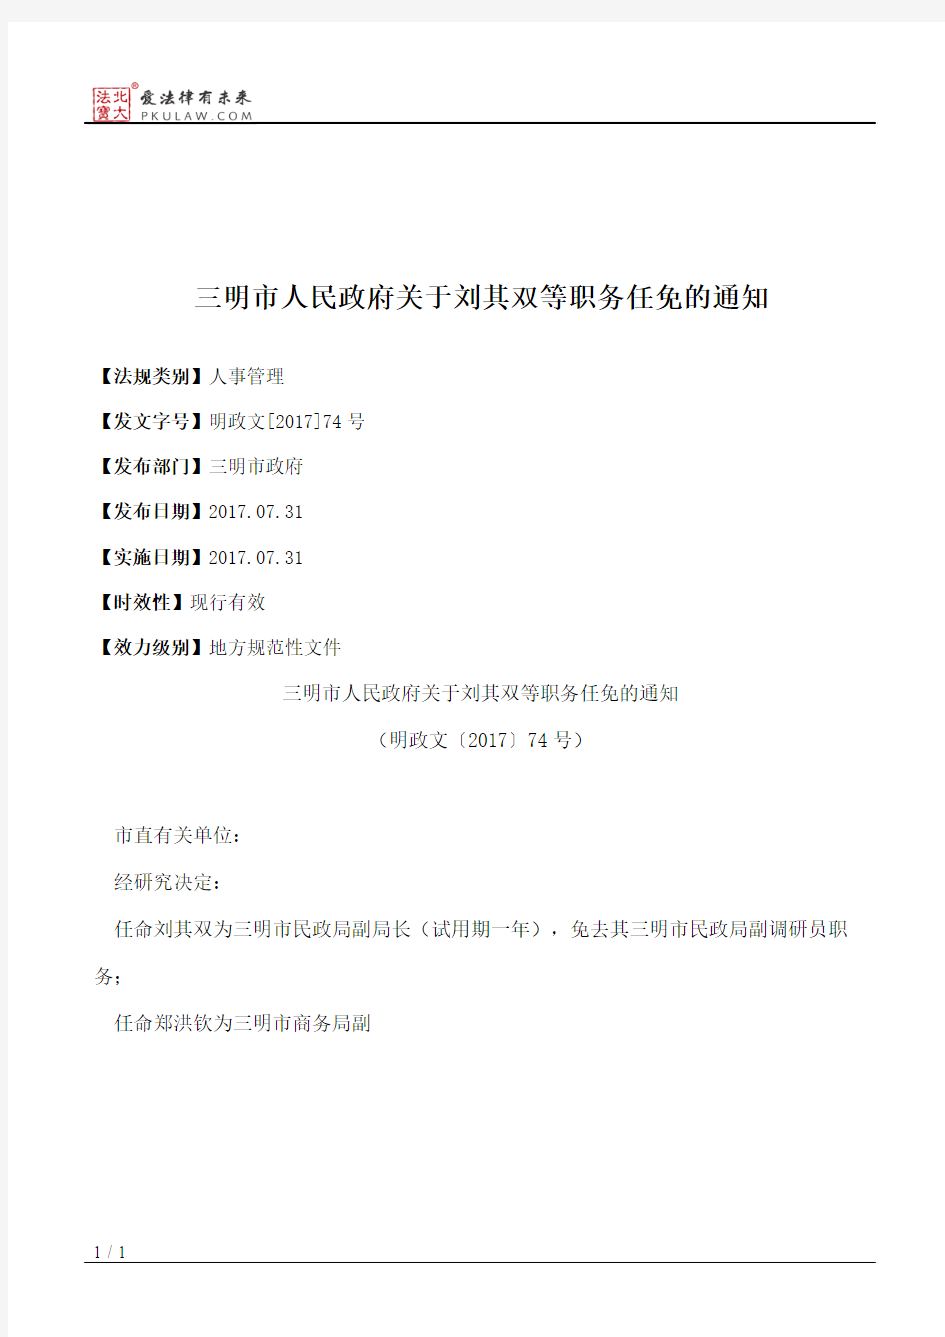 三明市人民政府关于刘其双等职务任免的通知